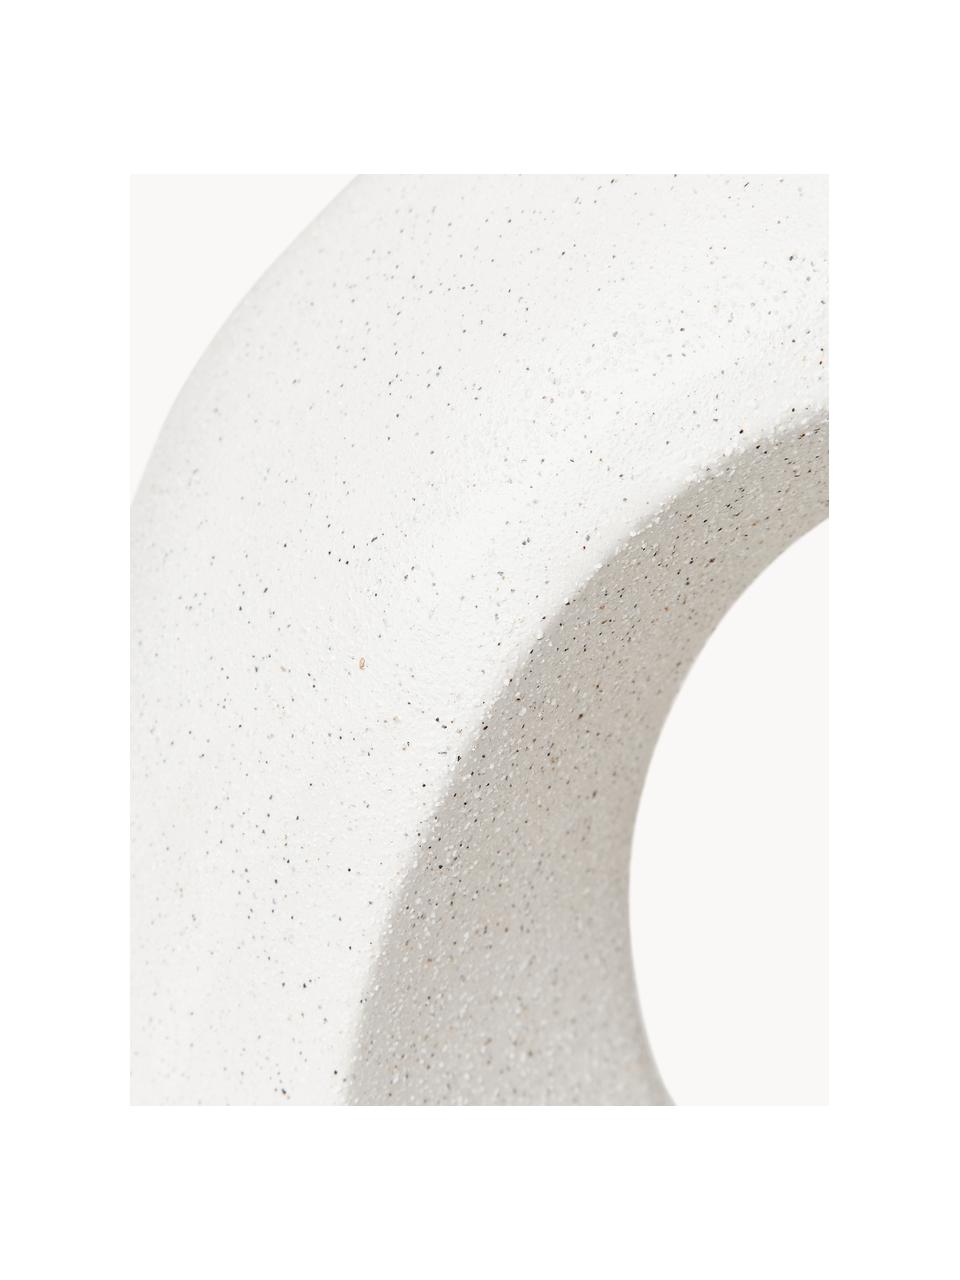 Oggetto decorativo effetto sabbia Olena, Gres, Bianco latte, Larg. 32 x Alt. 31 cm